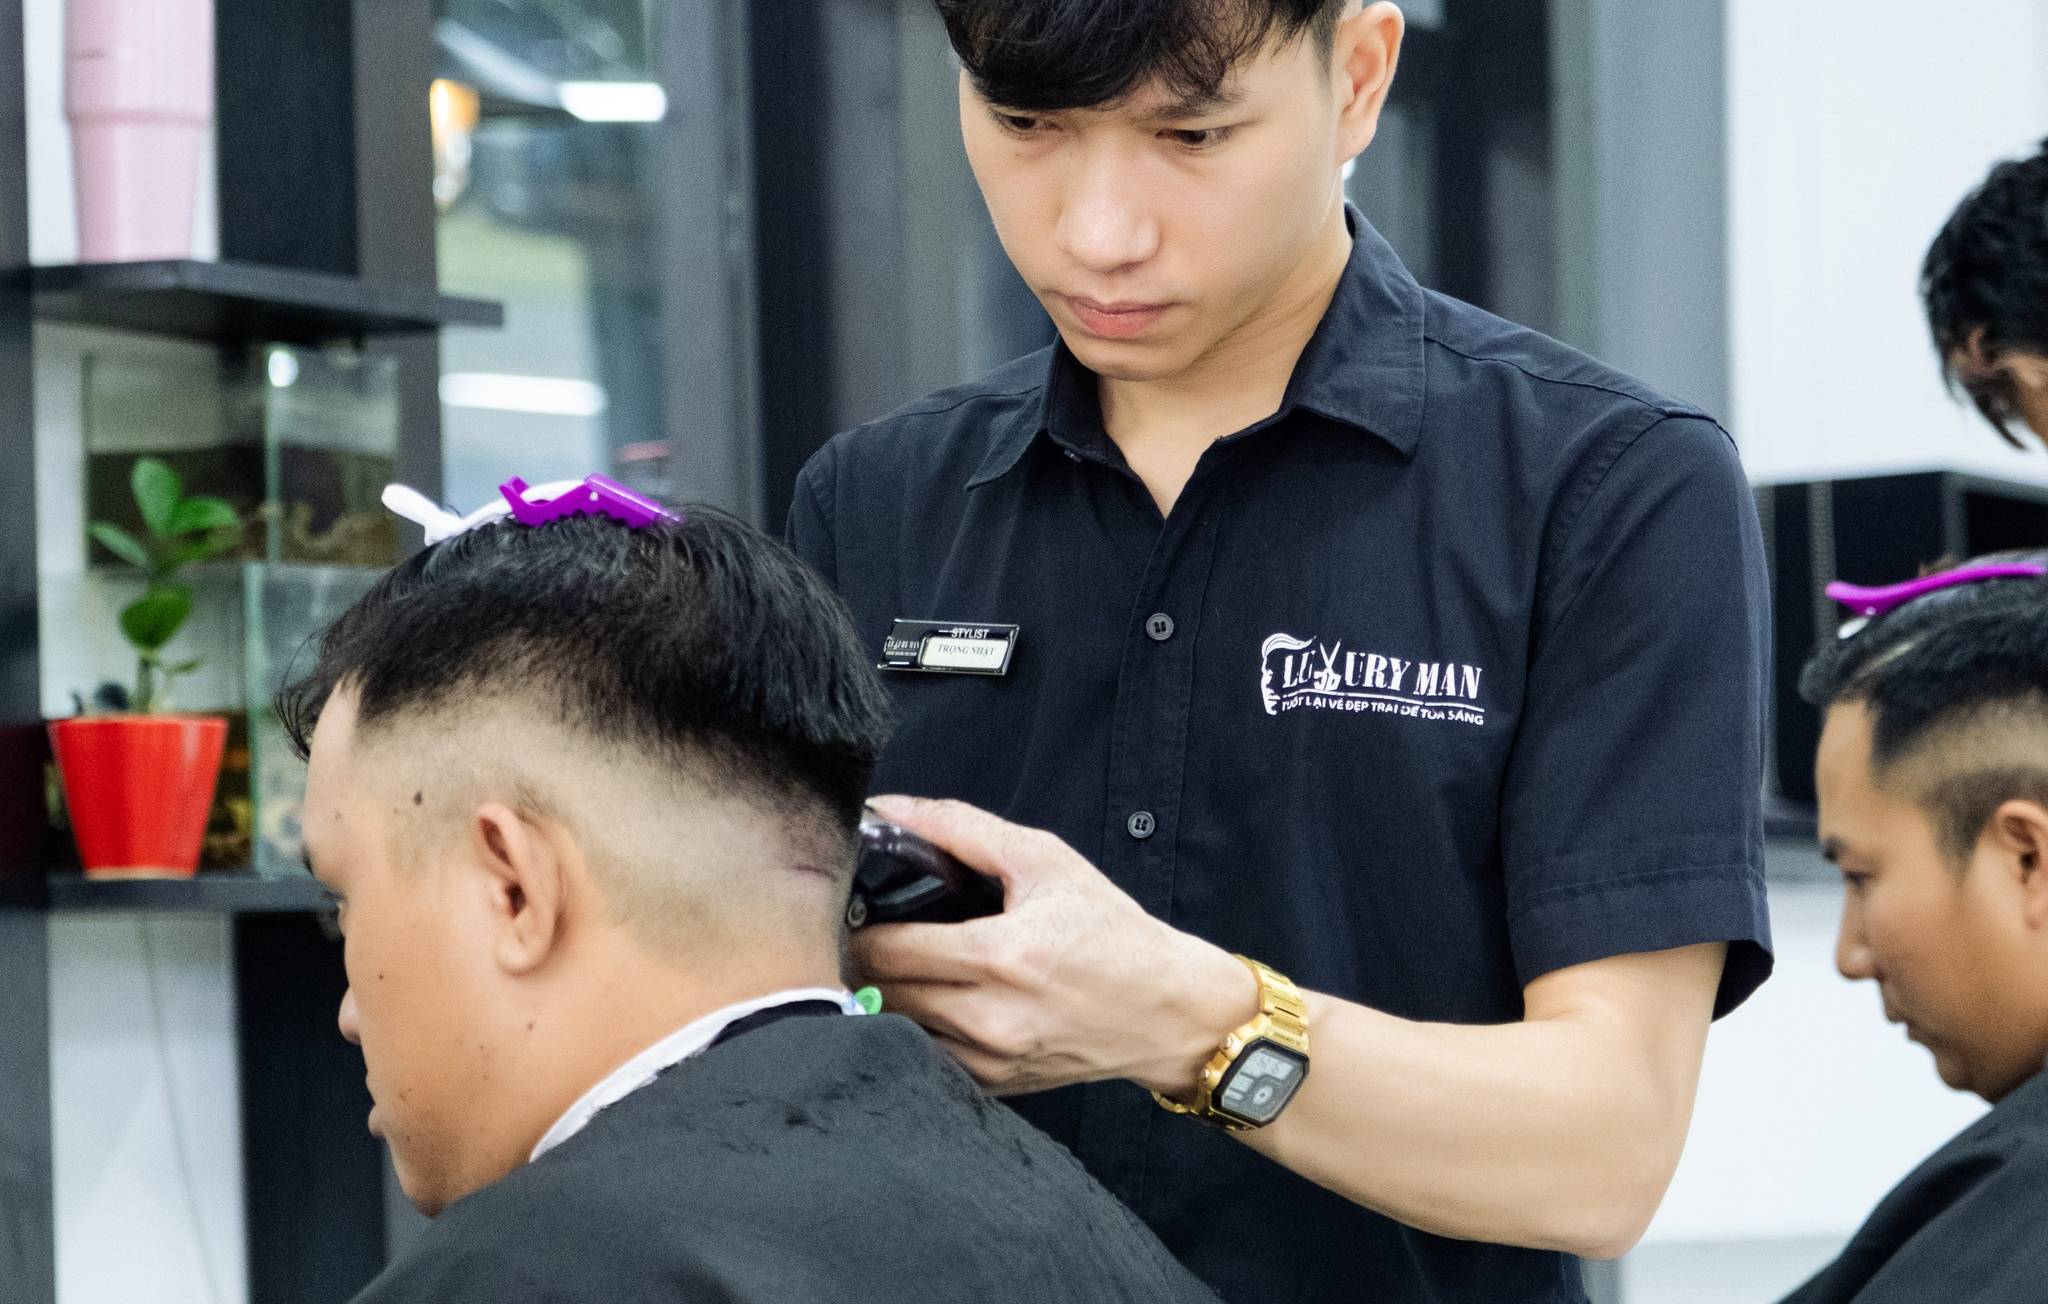 Viện Tóc Luxury Man - Salon tóc Đà Nẵng chất lượng